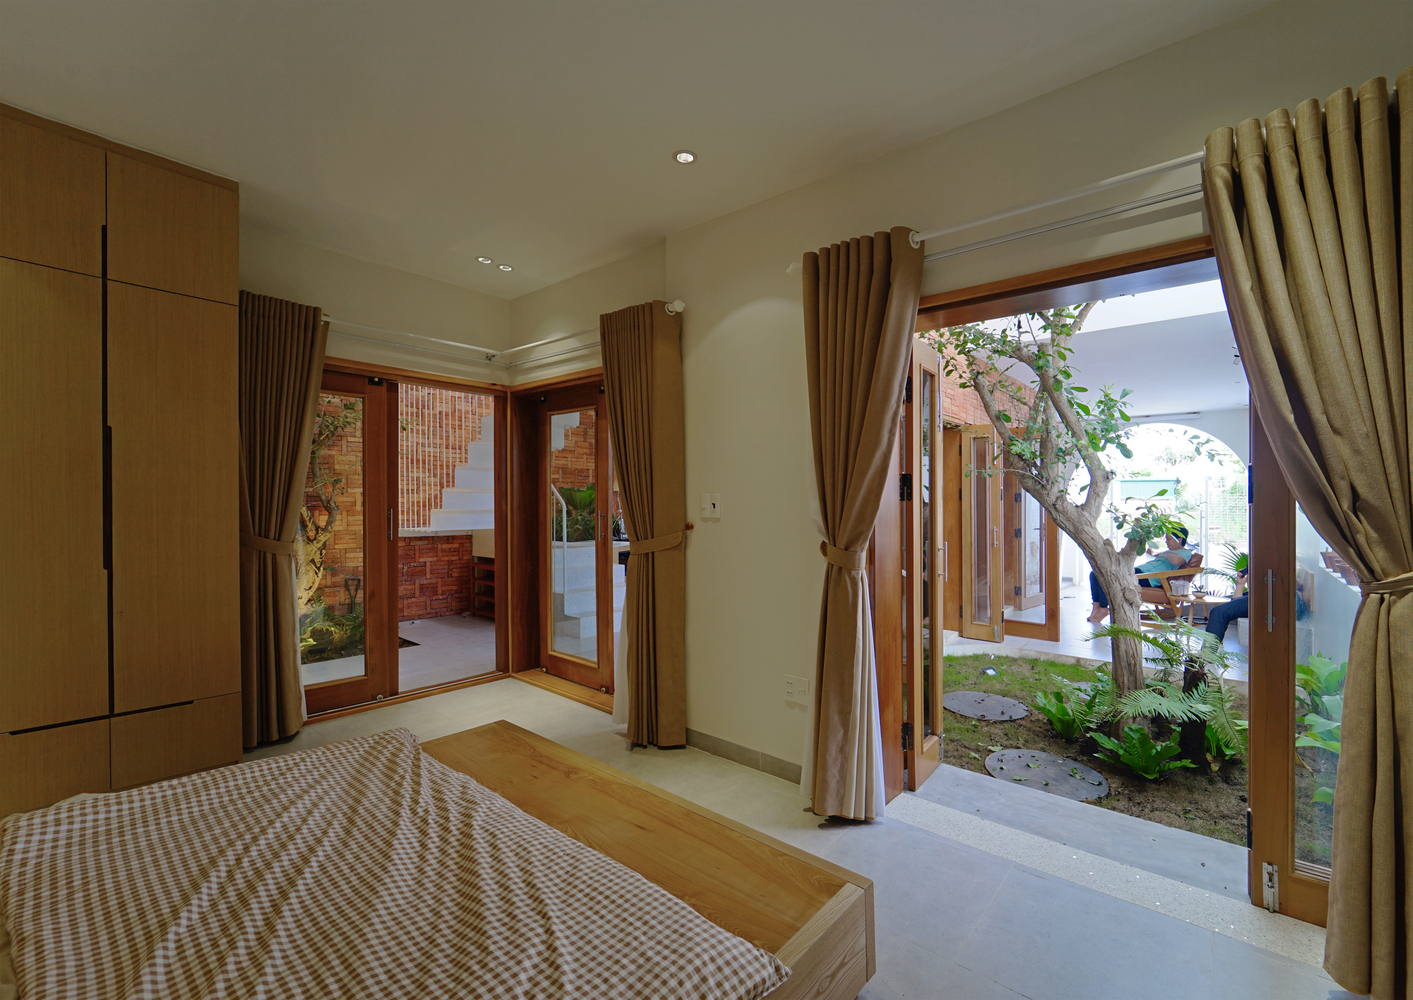 Phòng ngủ có thiết kế đơn giản, thoáng mở với hệ cửa lớn nhìn ra sân vườn.